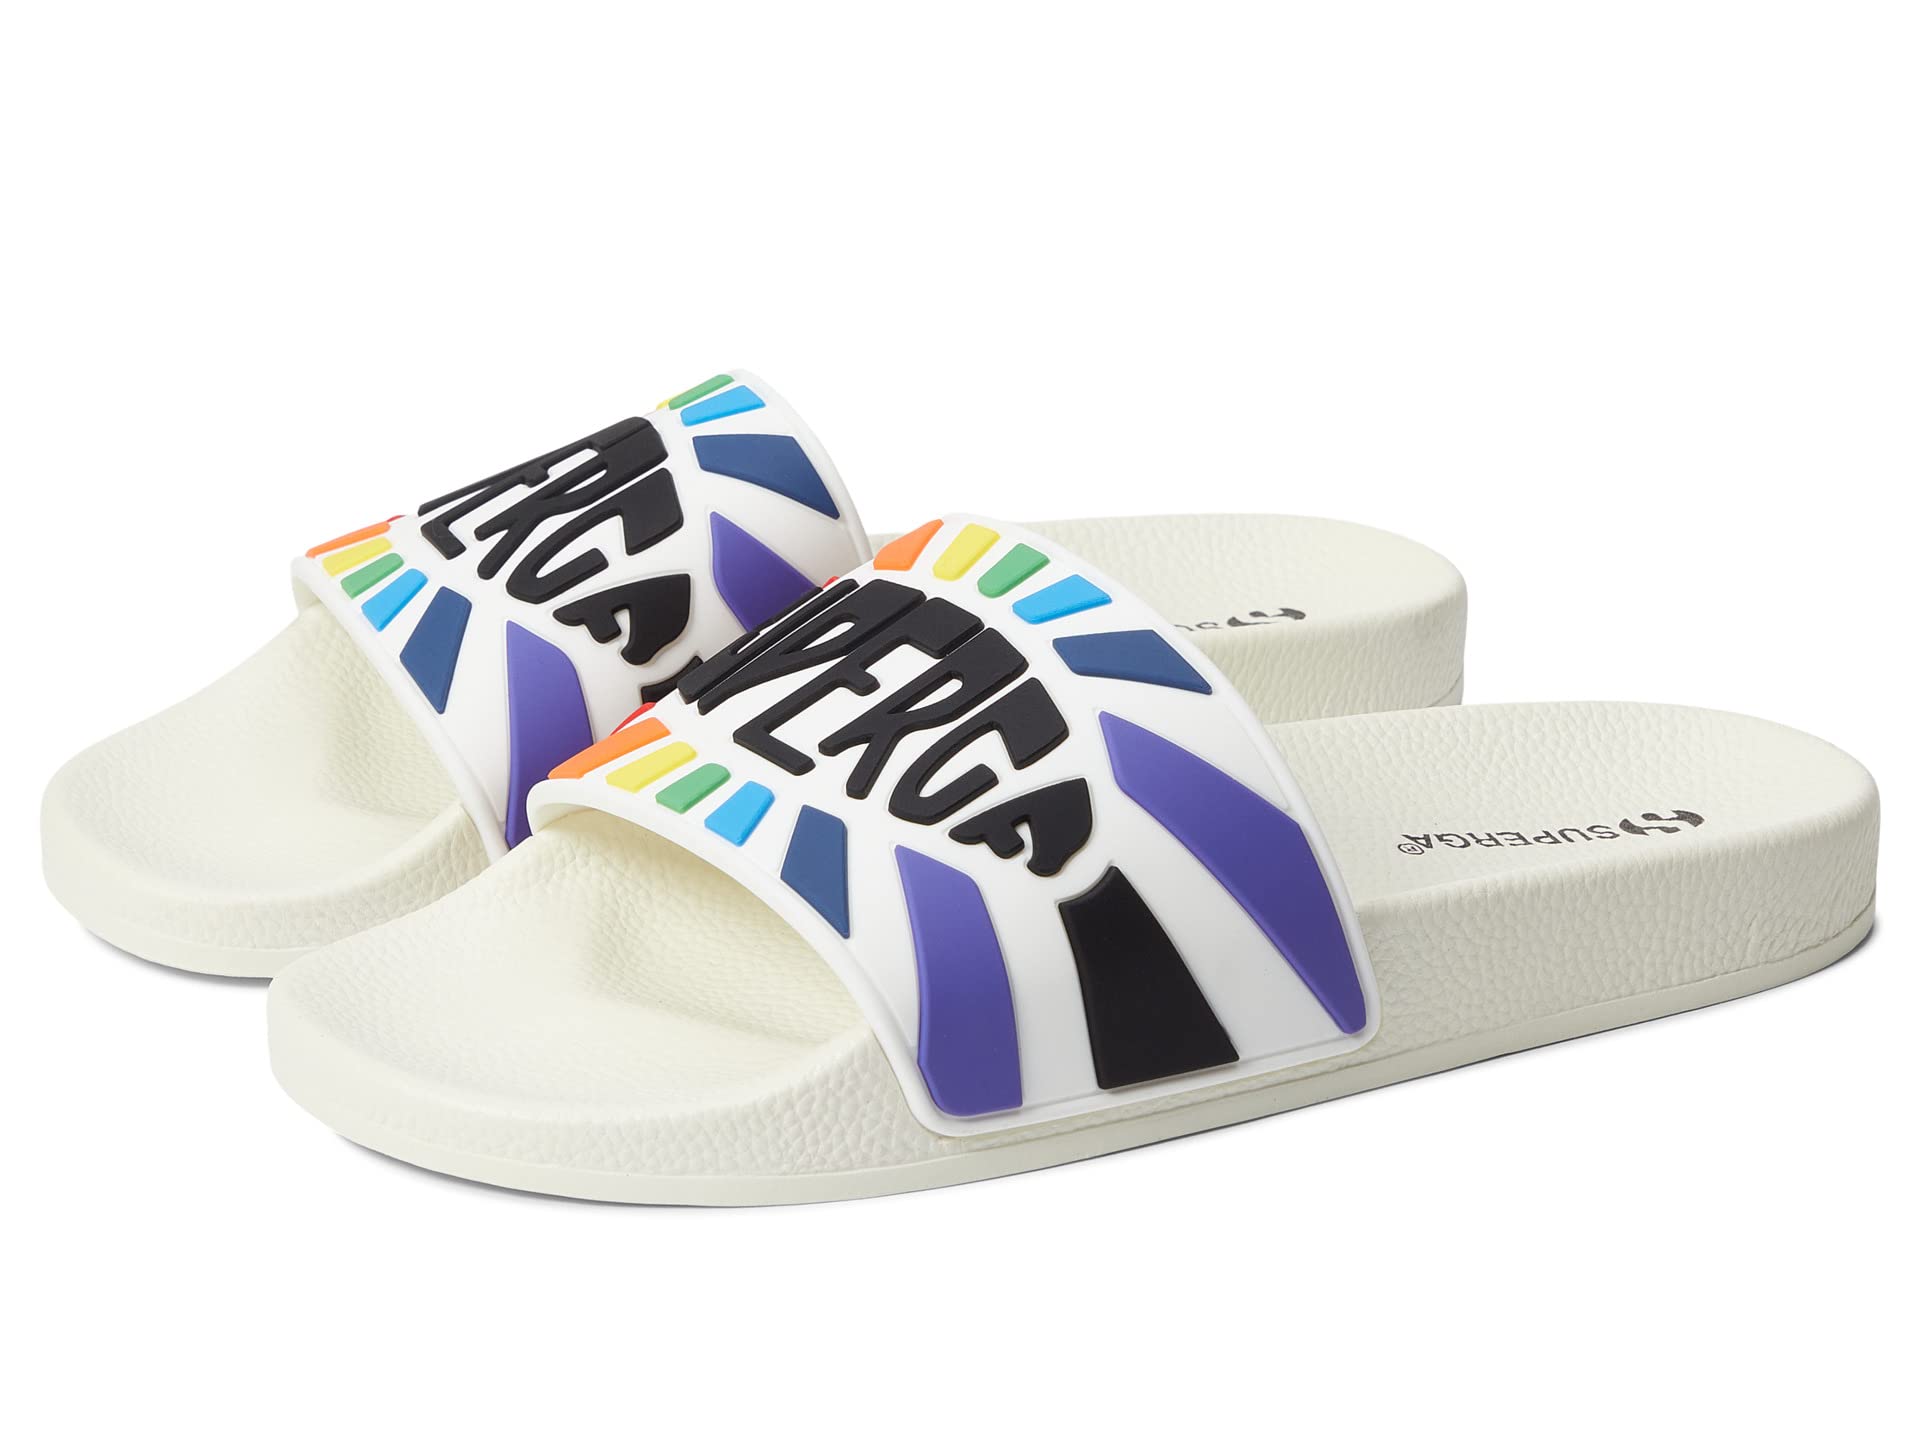 Пляжные сандали Superga, 1908 Slide Multicolor Logo пляжные сандали superga 1908 slide multicolor logo